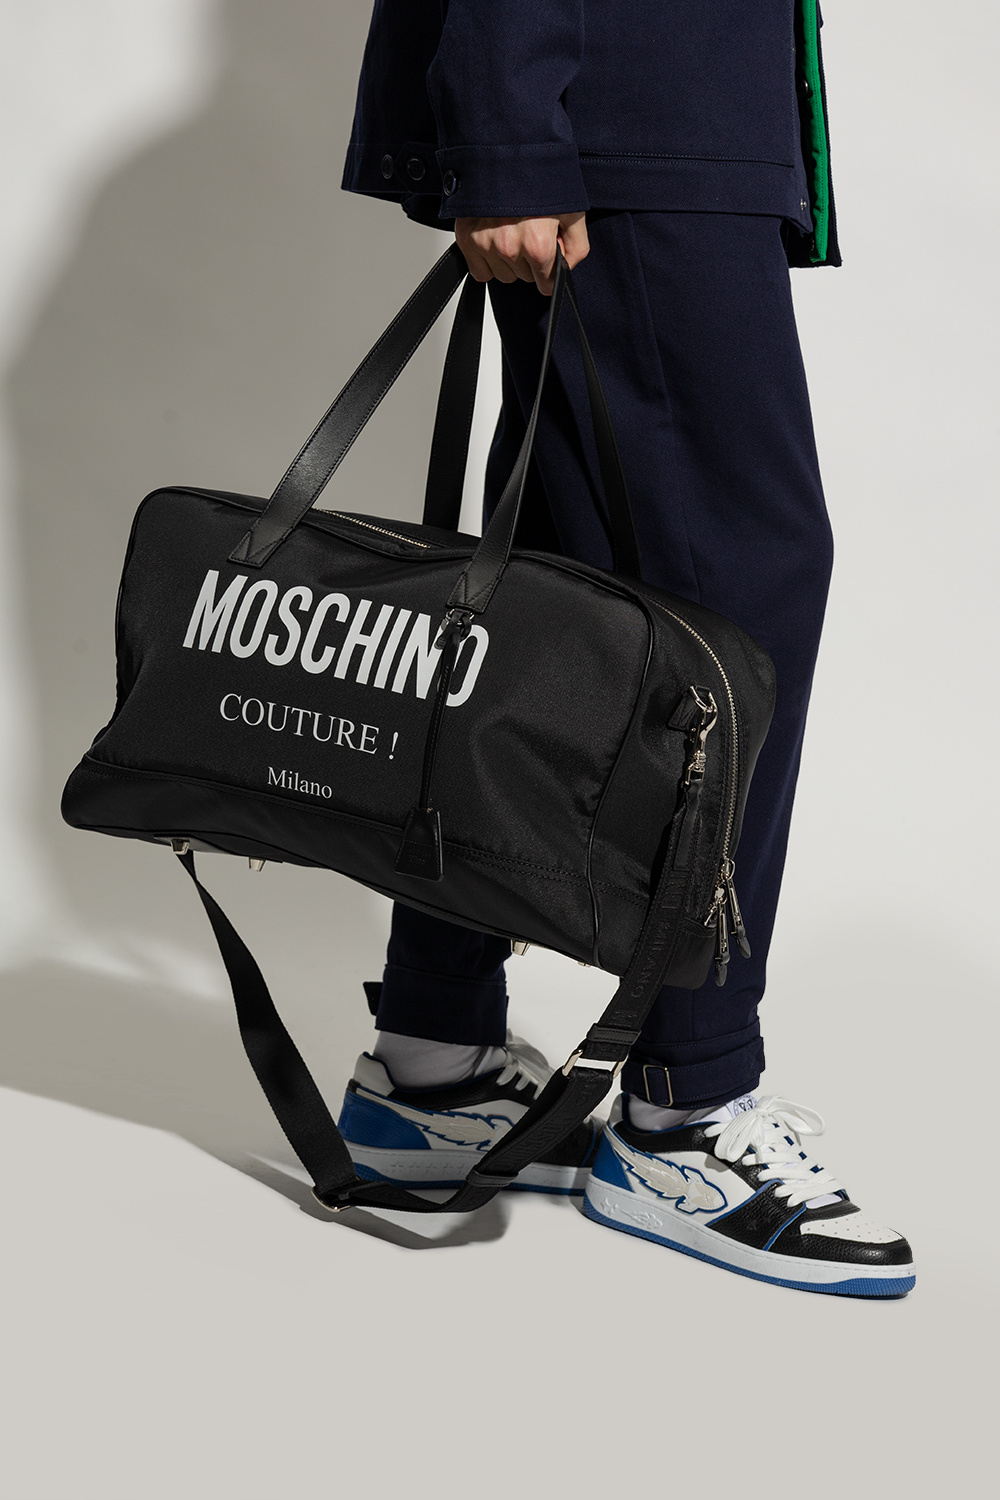 Moschino Duffel bag with logo